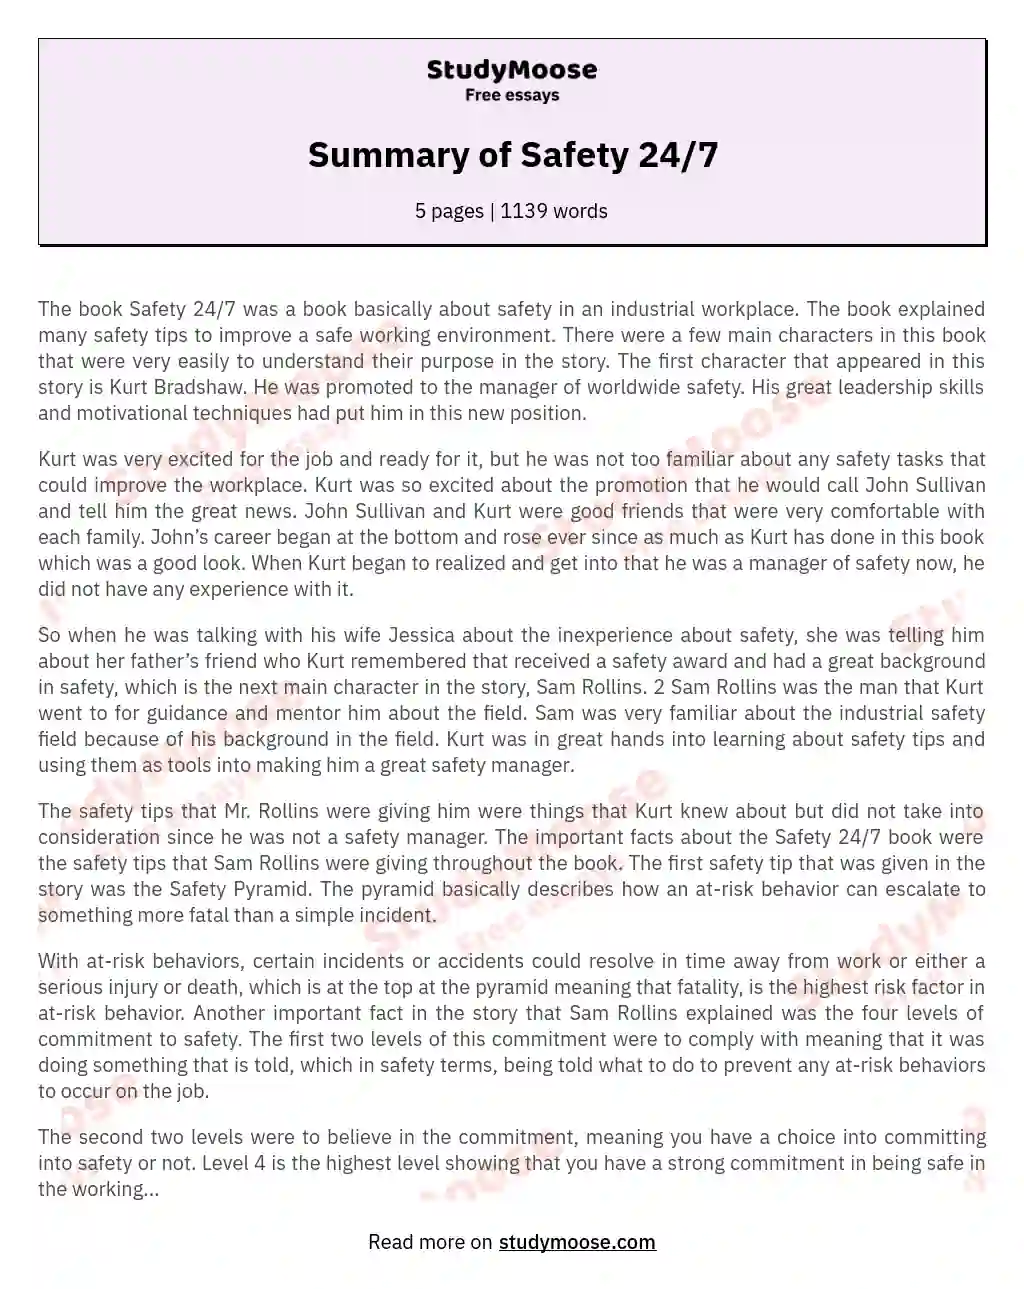 Summary of Safety 24/7 essay